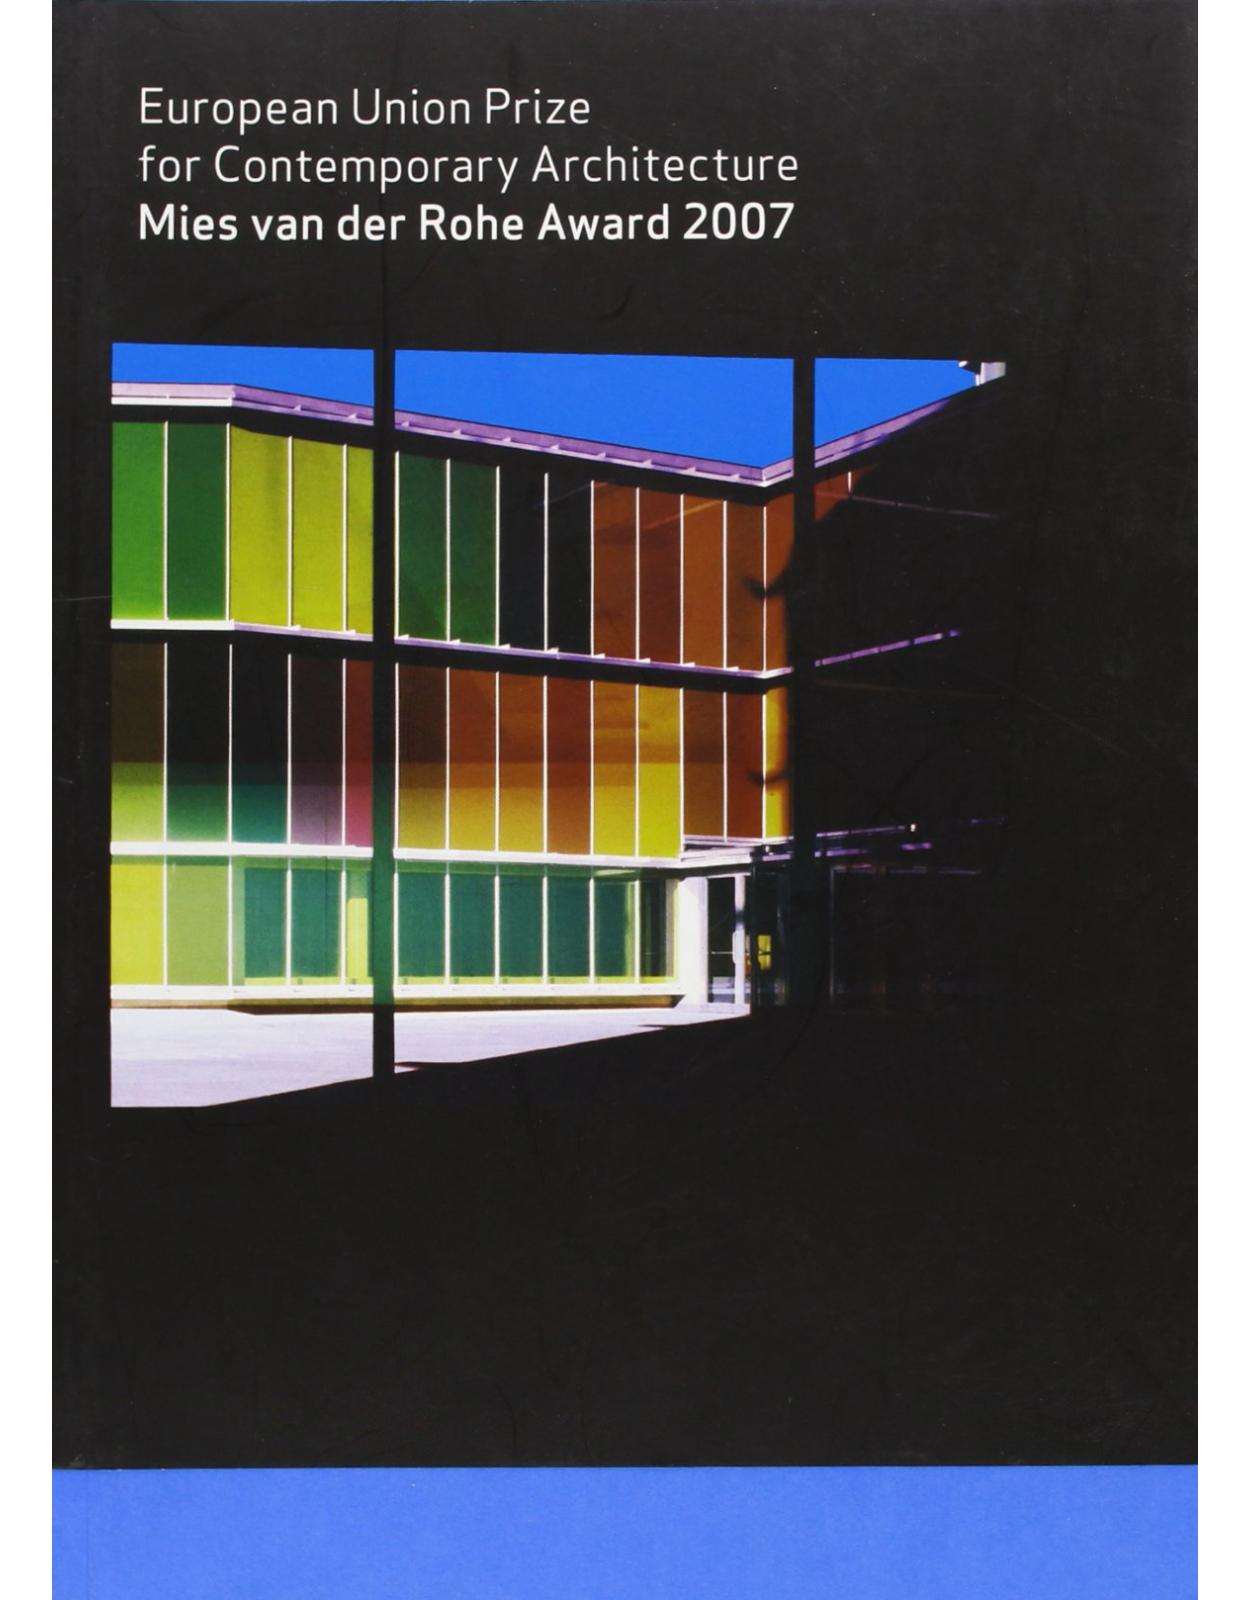 Mies Van der Rohe Award 2007